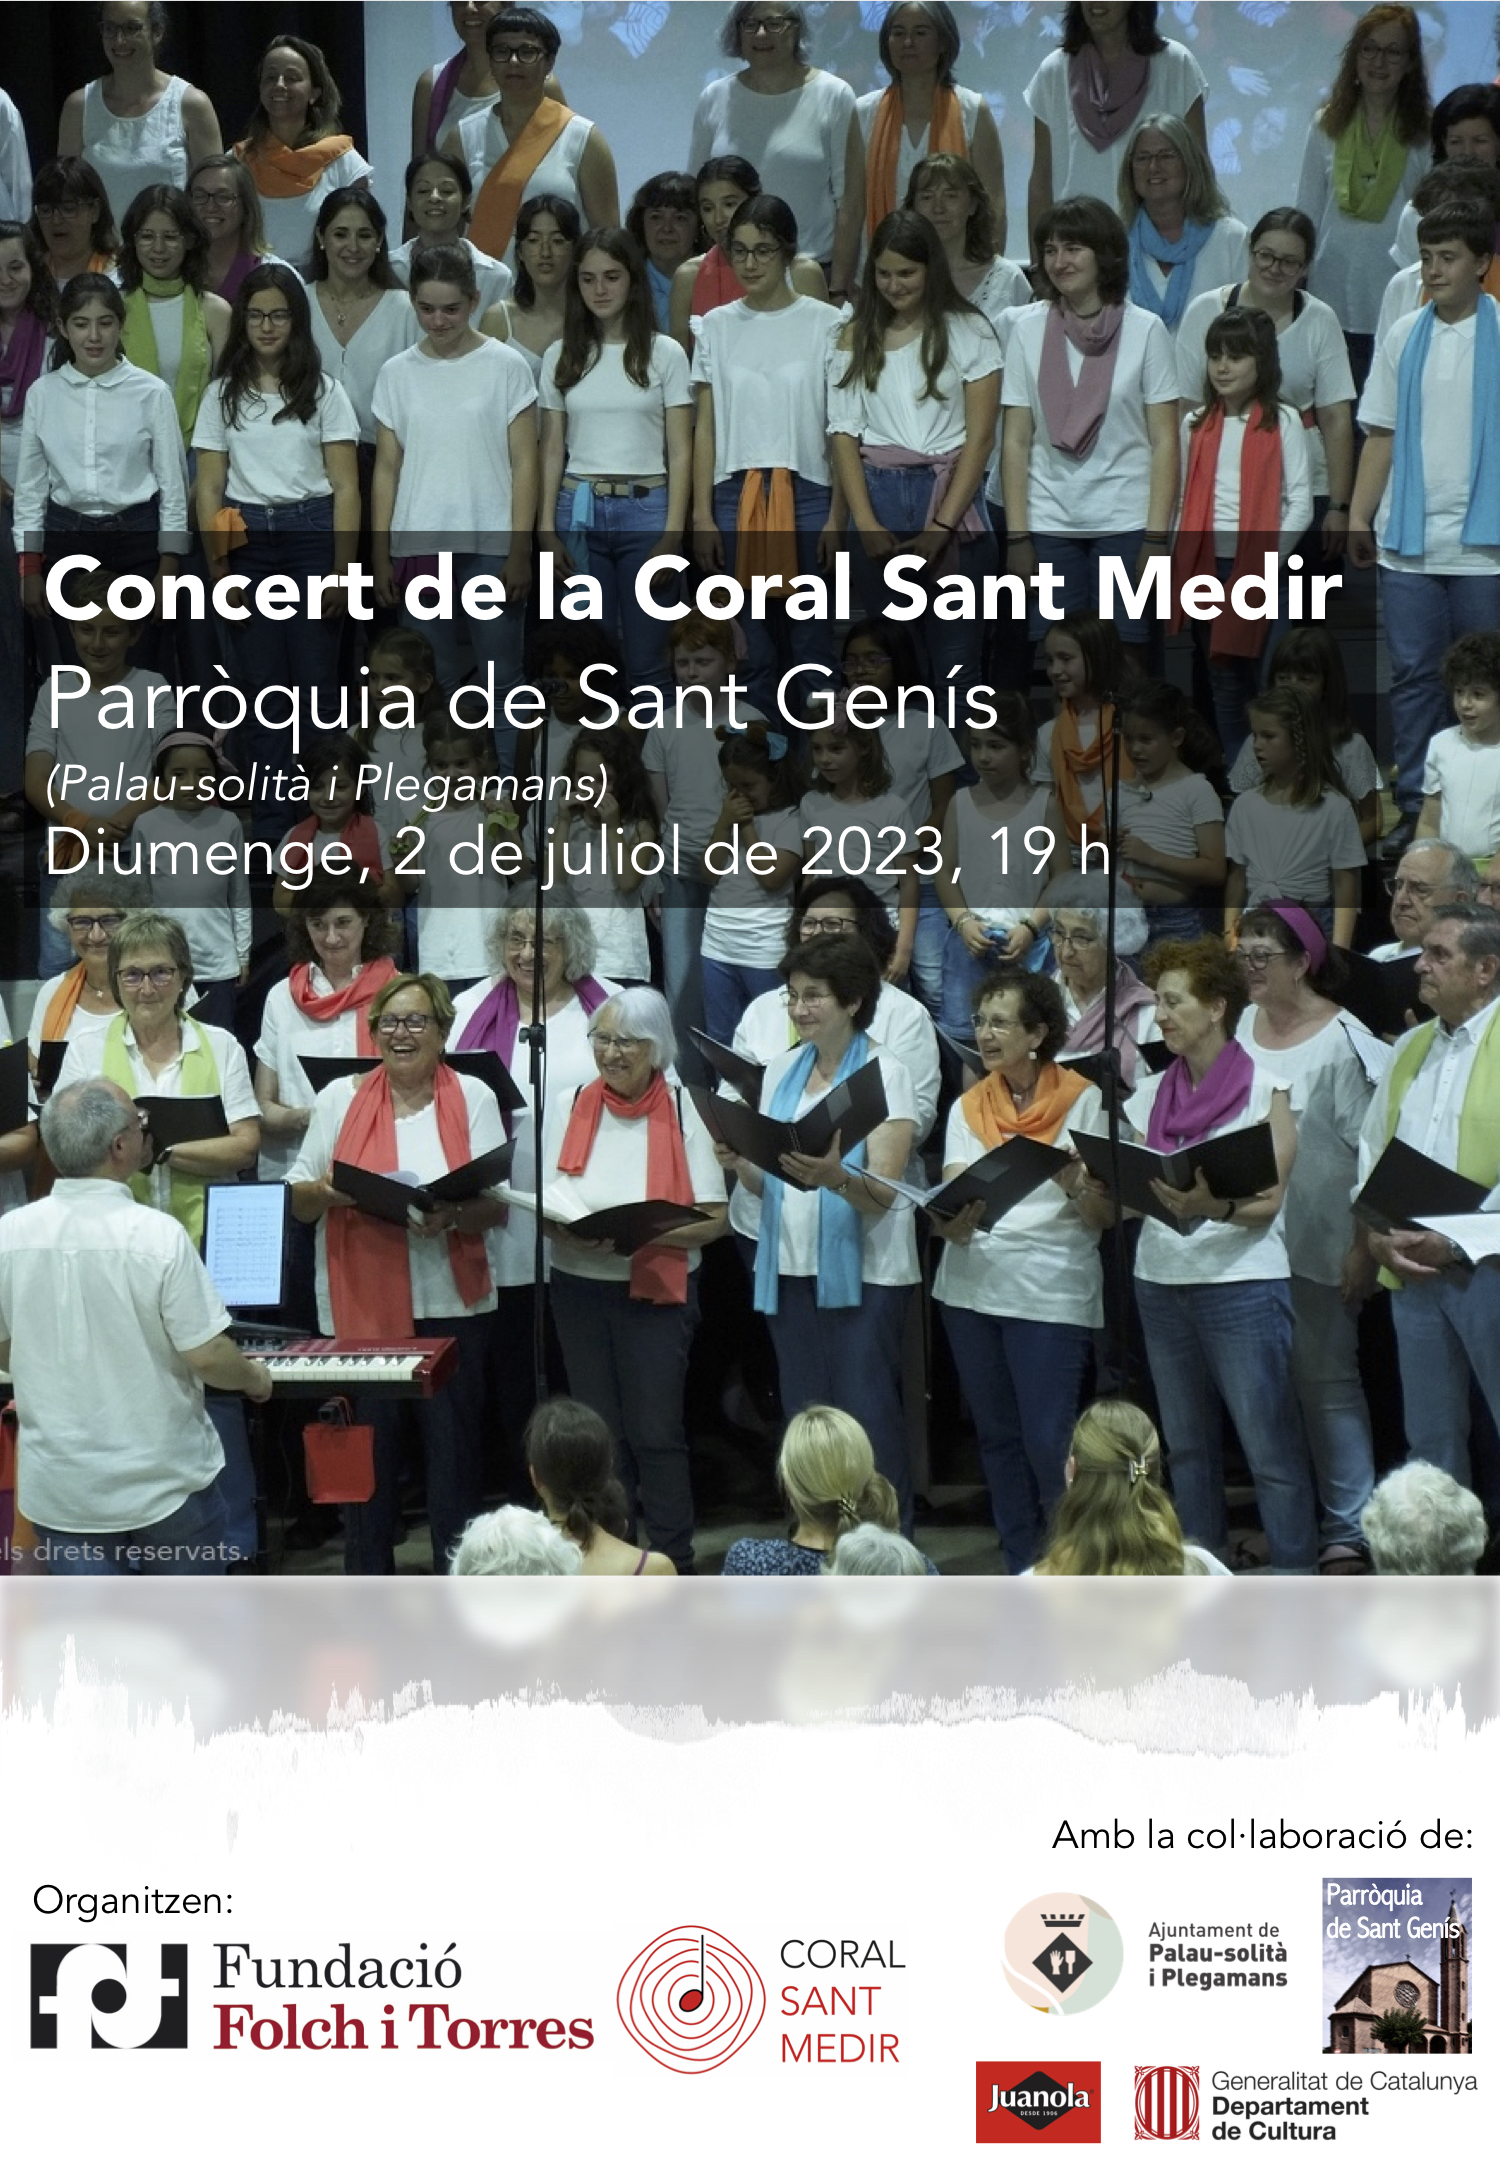 Visita a la Fundació Folch i Torres, convivència i concert a Palau-solità i Plegamans